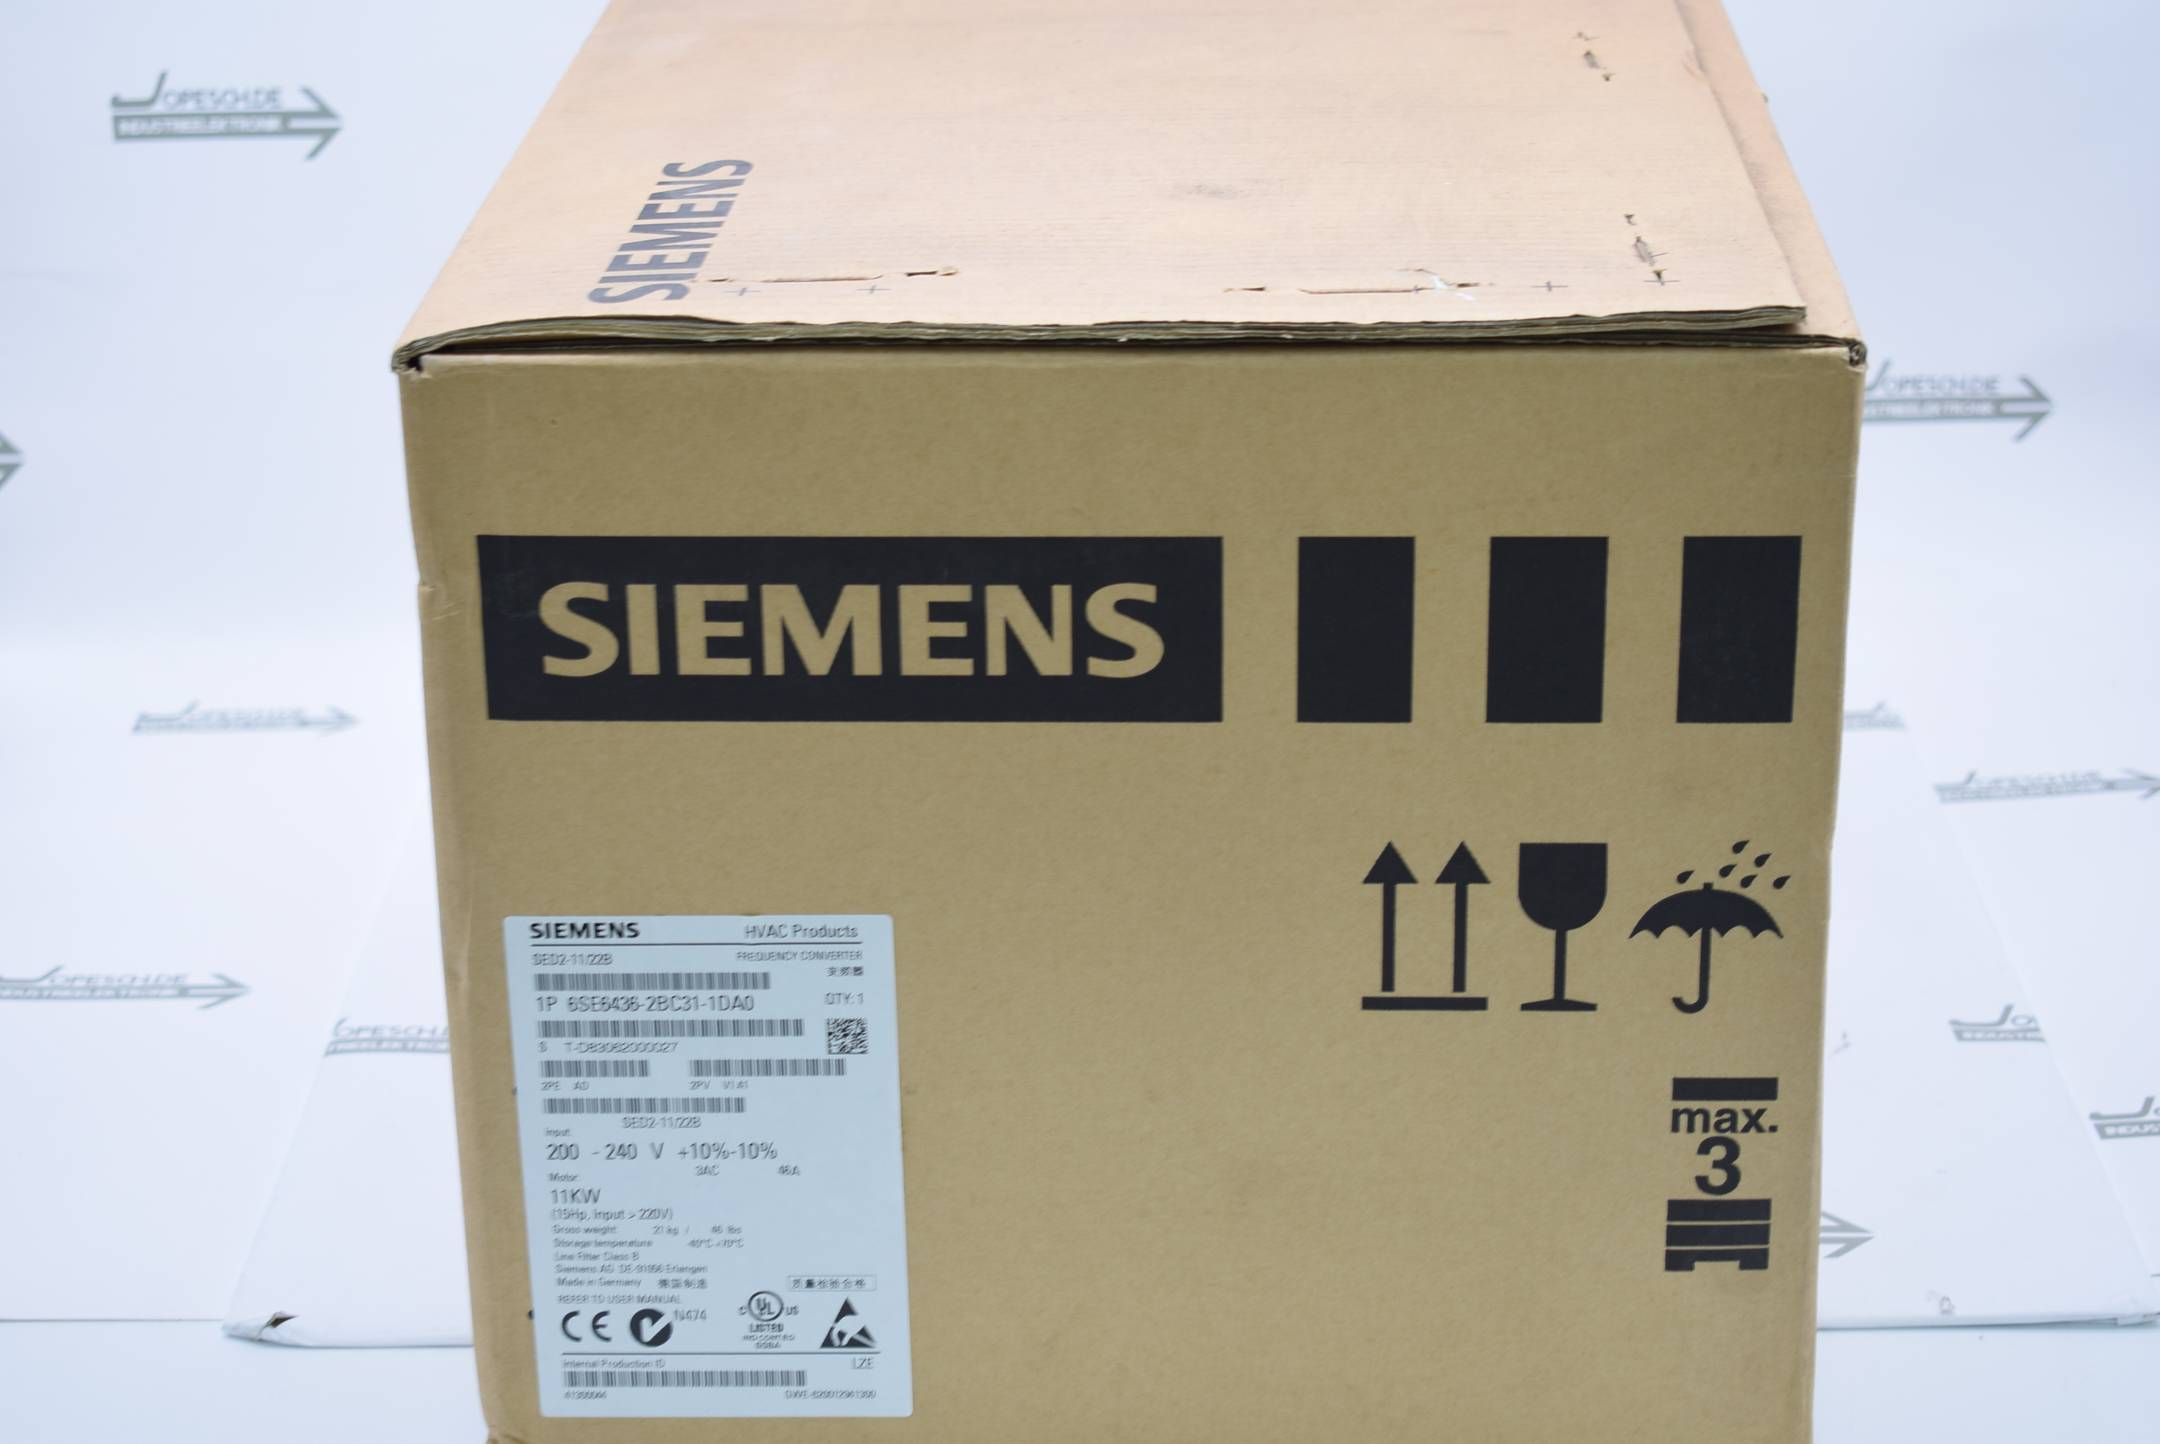 Siemens Frequenzumwandler 6SE6436-2BC31-1DA0 ( 6SE6 436-2BC31-1DA0 ) V1.41